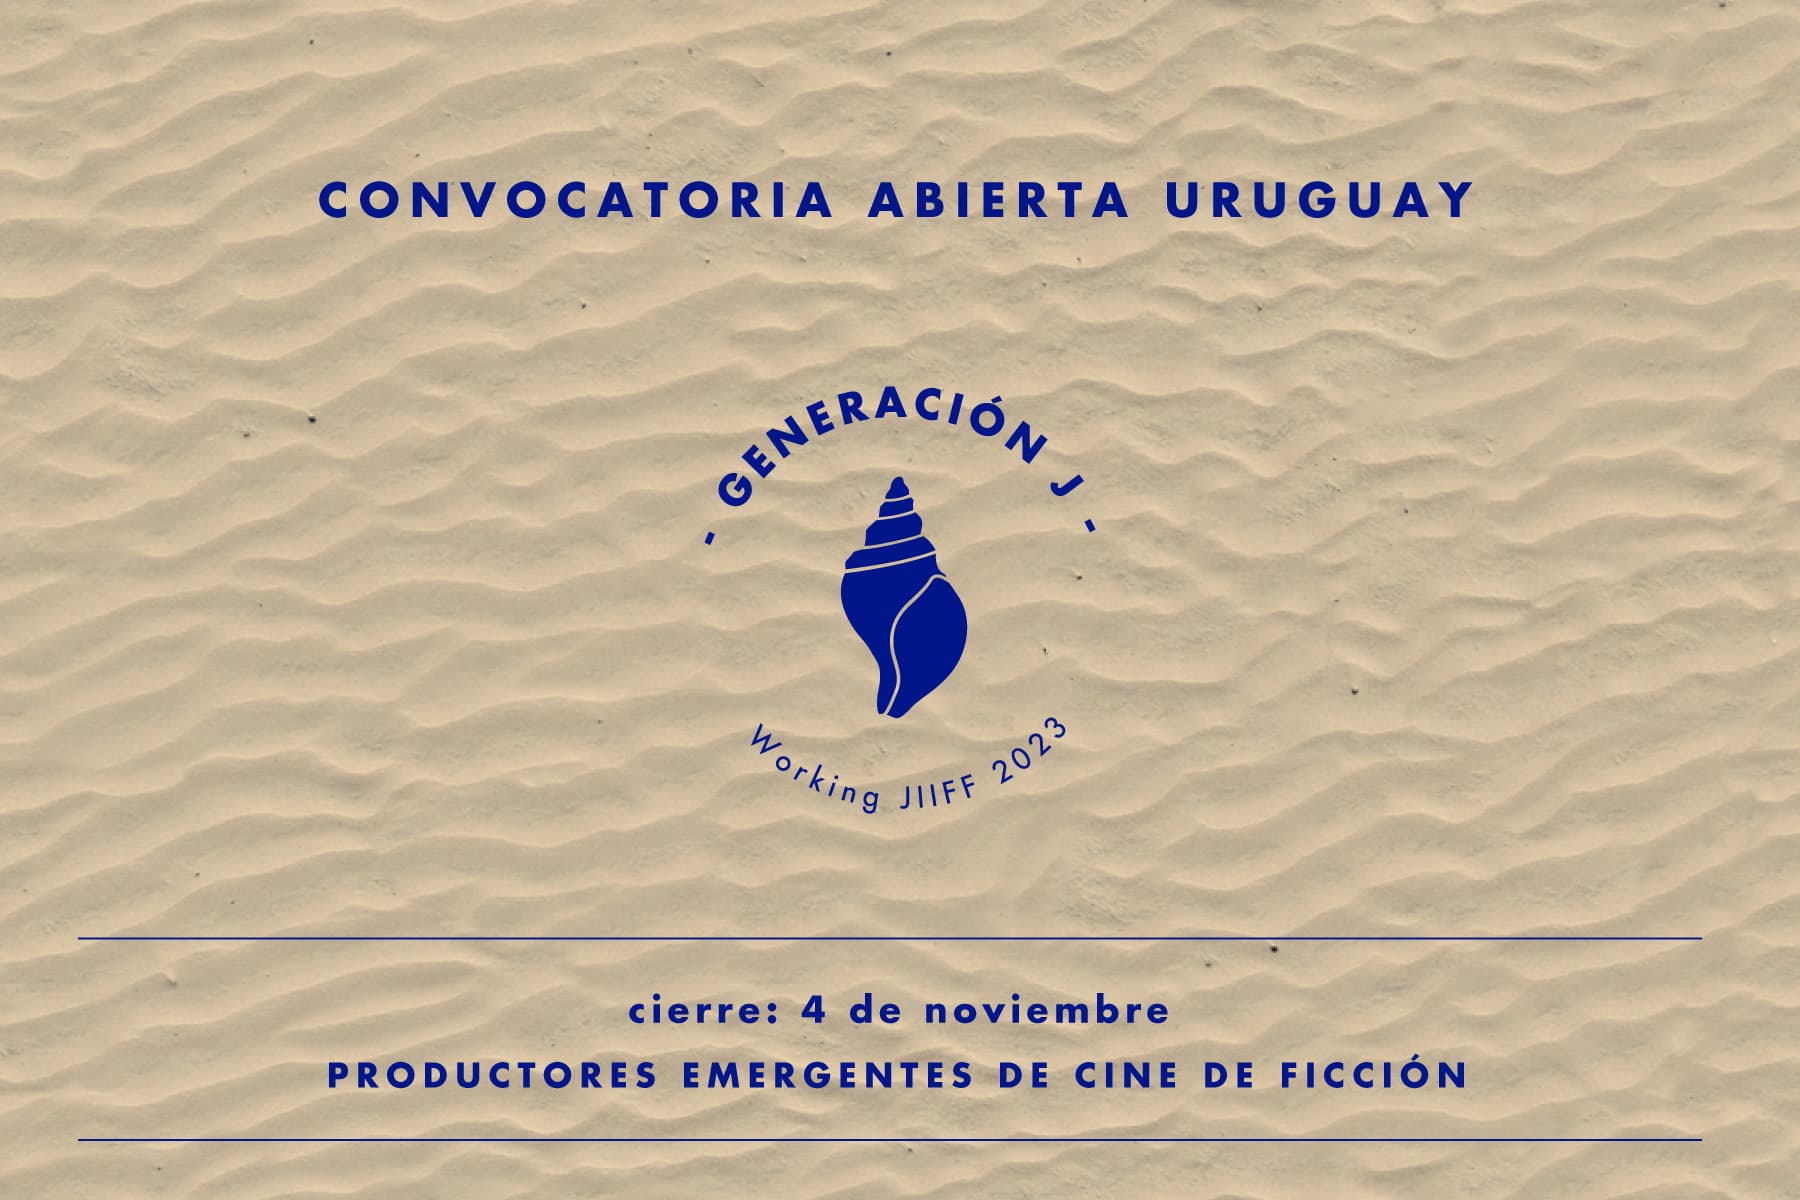 Convocatoria Abierta Uruguay para Productores Emergentes de Cine de Ficción